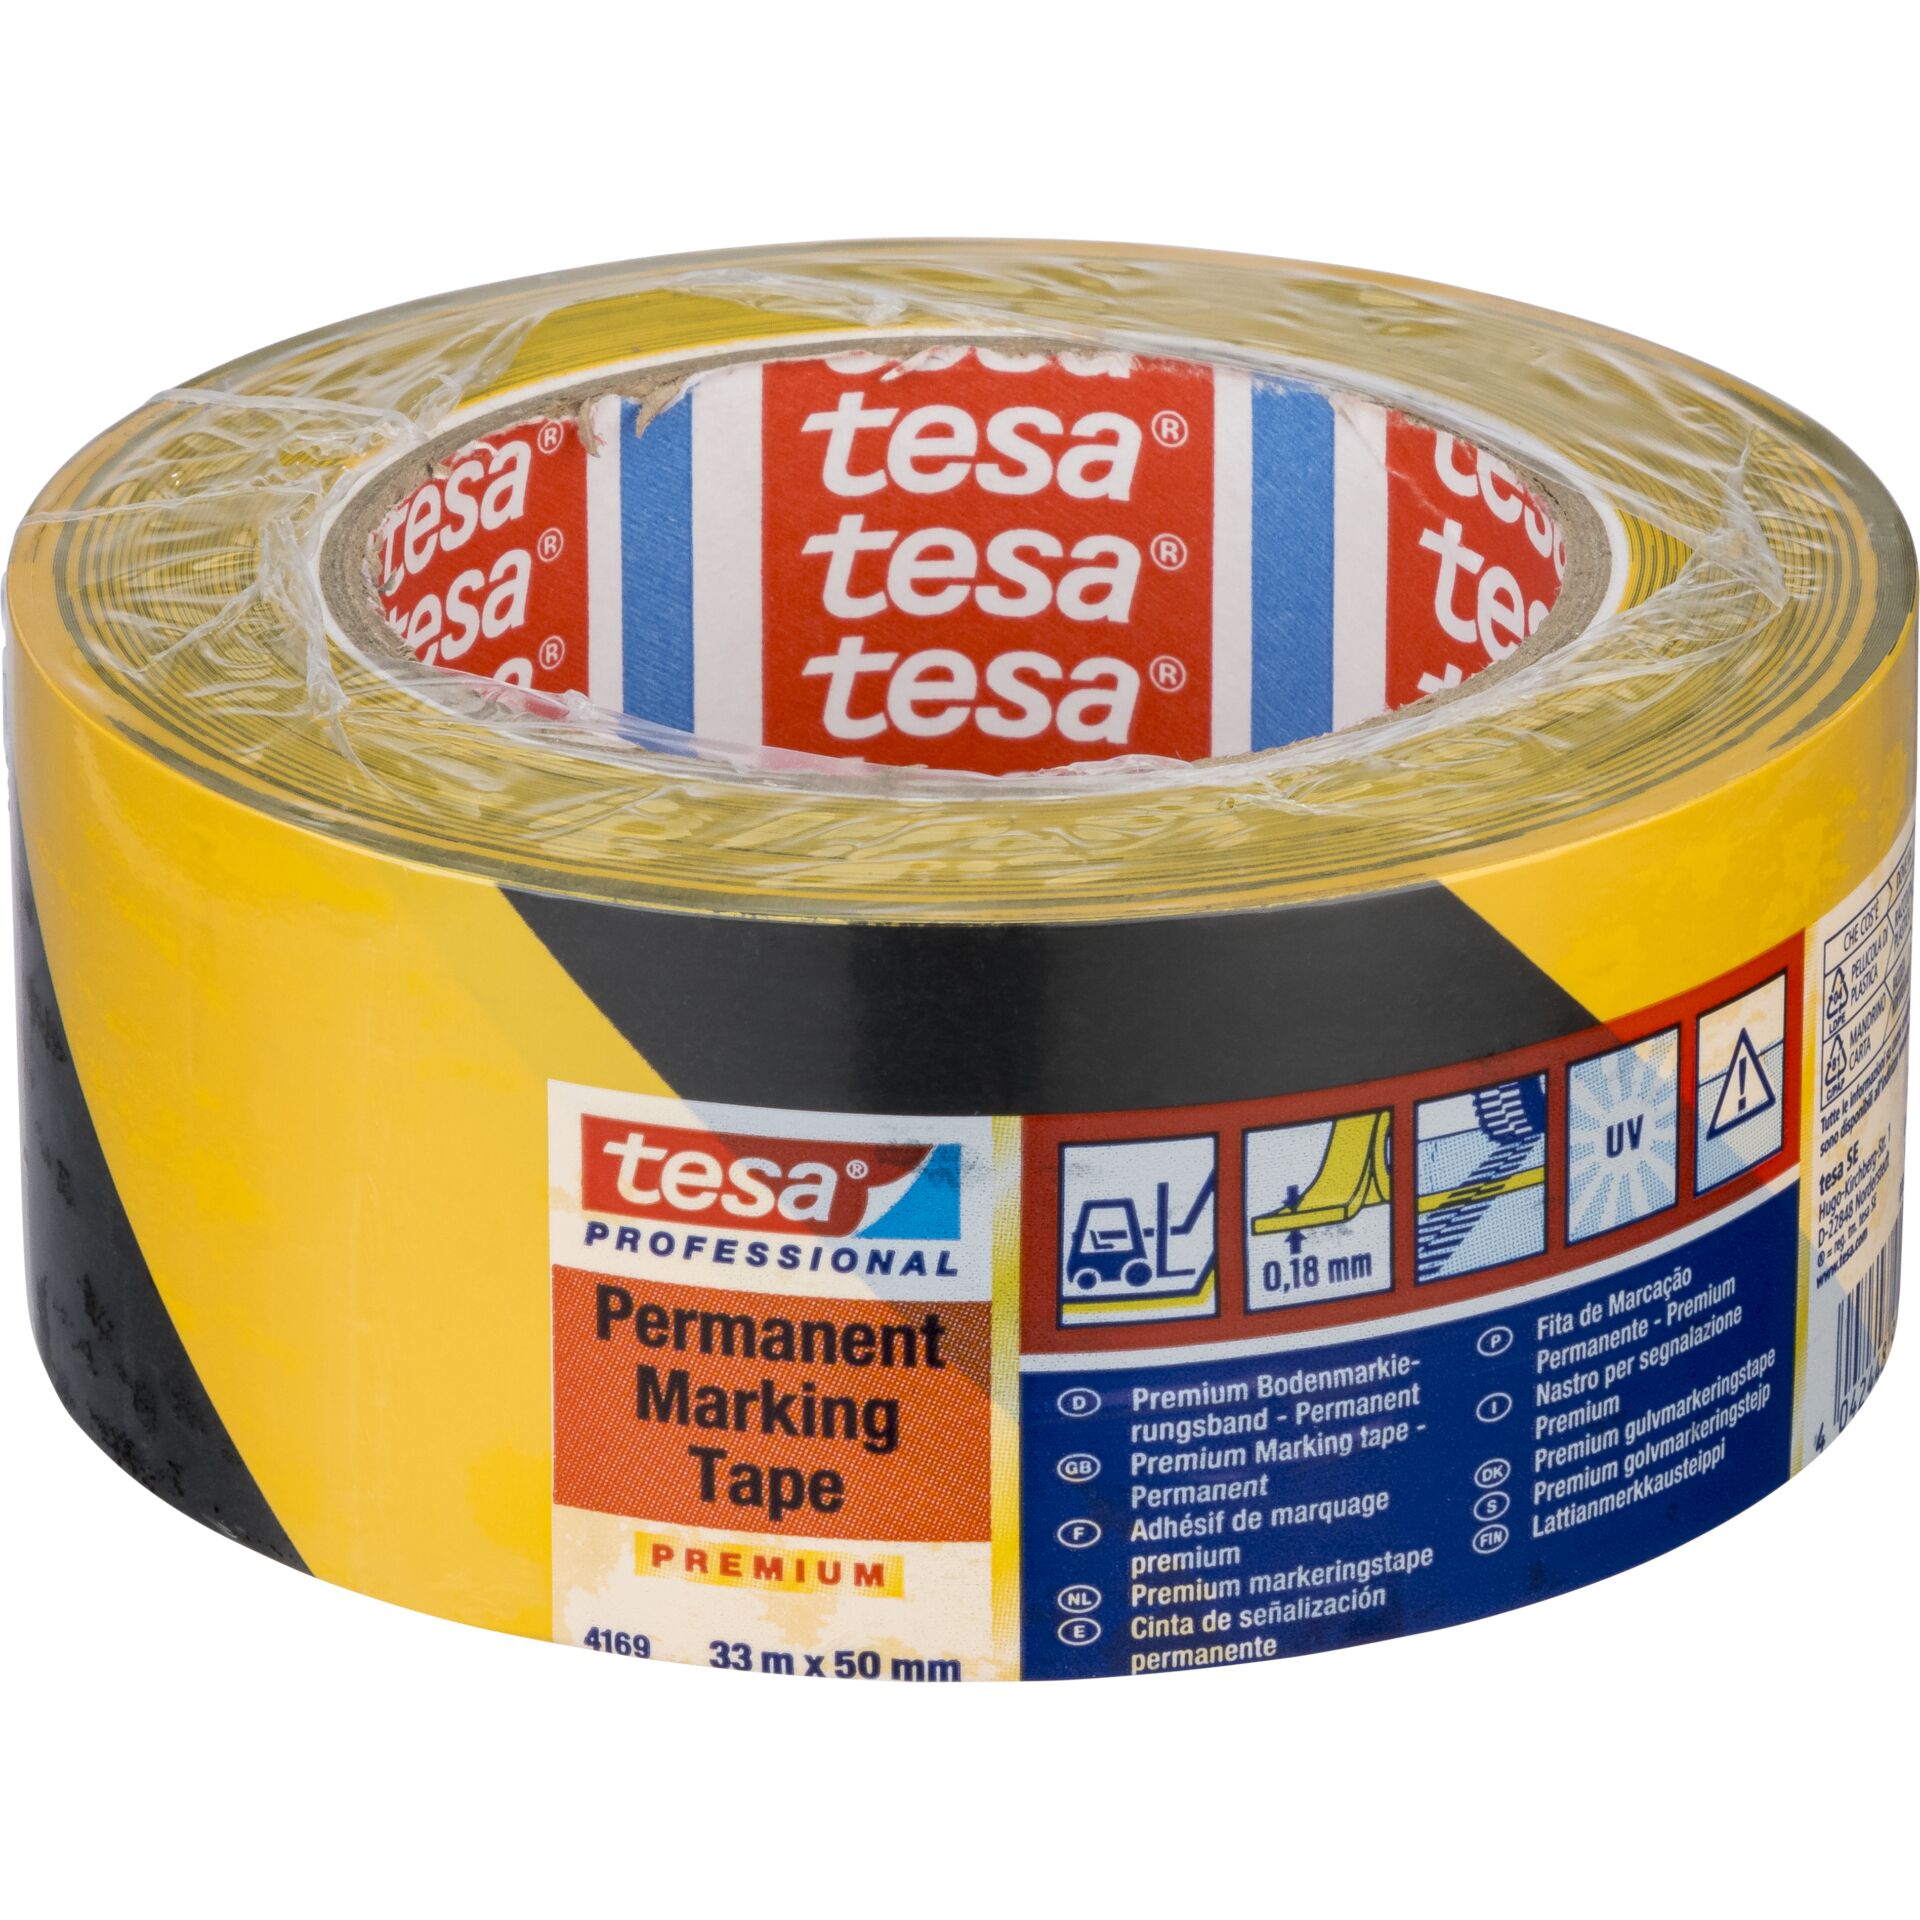 Tesa Floor Marking Tape 66mx50mm Prem.Prof.bl/yell. 04169